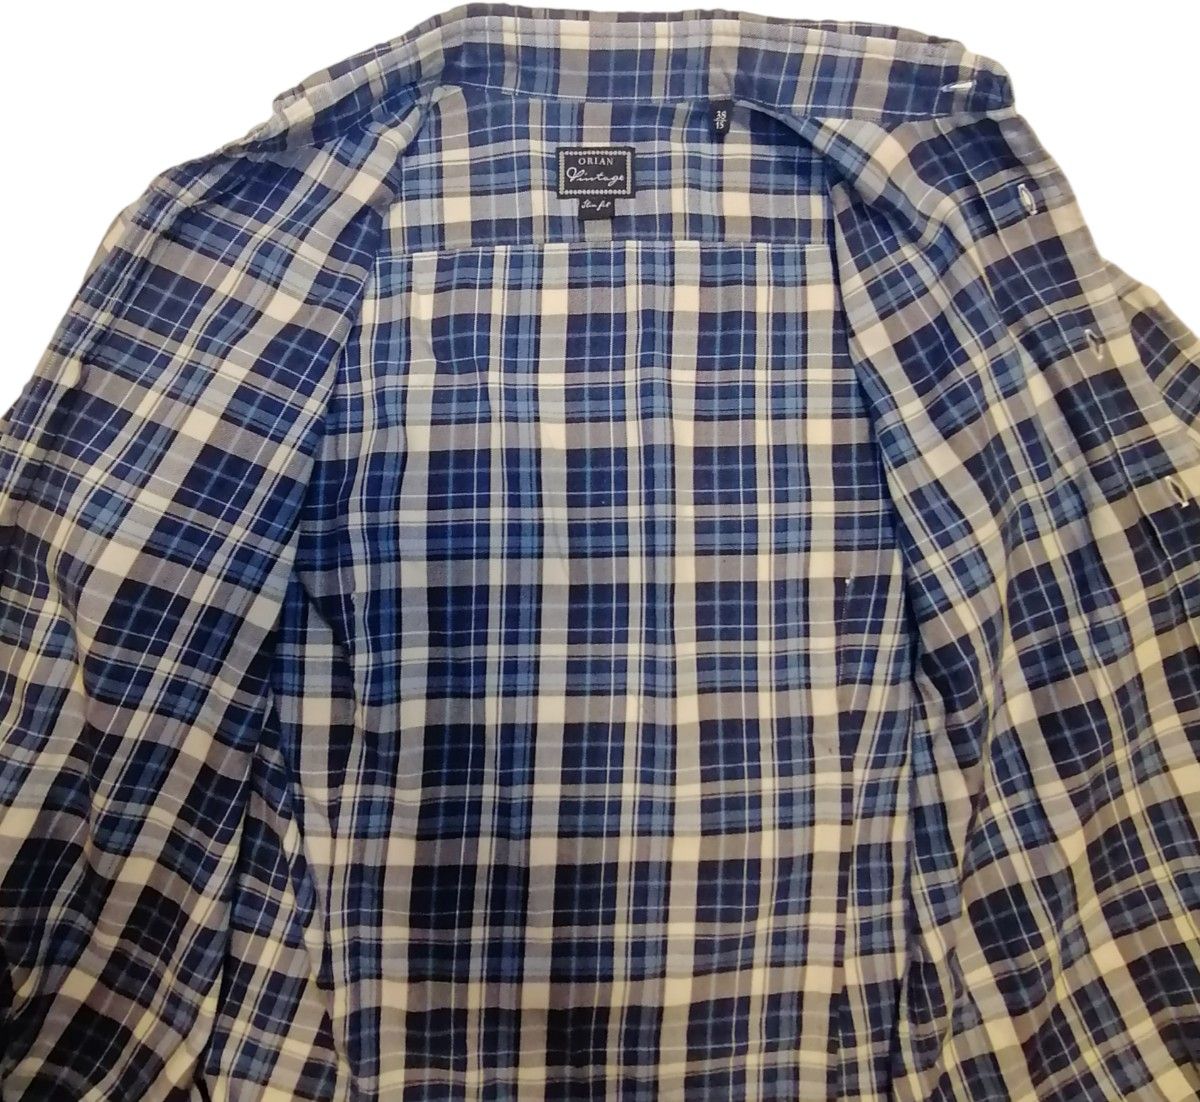 ORIAN Vintage 38-15 スリムフィット イタリア製 ドレスシャツ 長袖シャツ チェックシャツ ネルシャツ